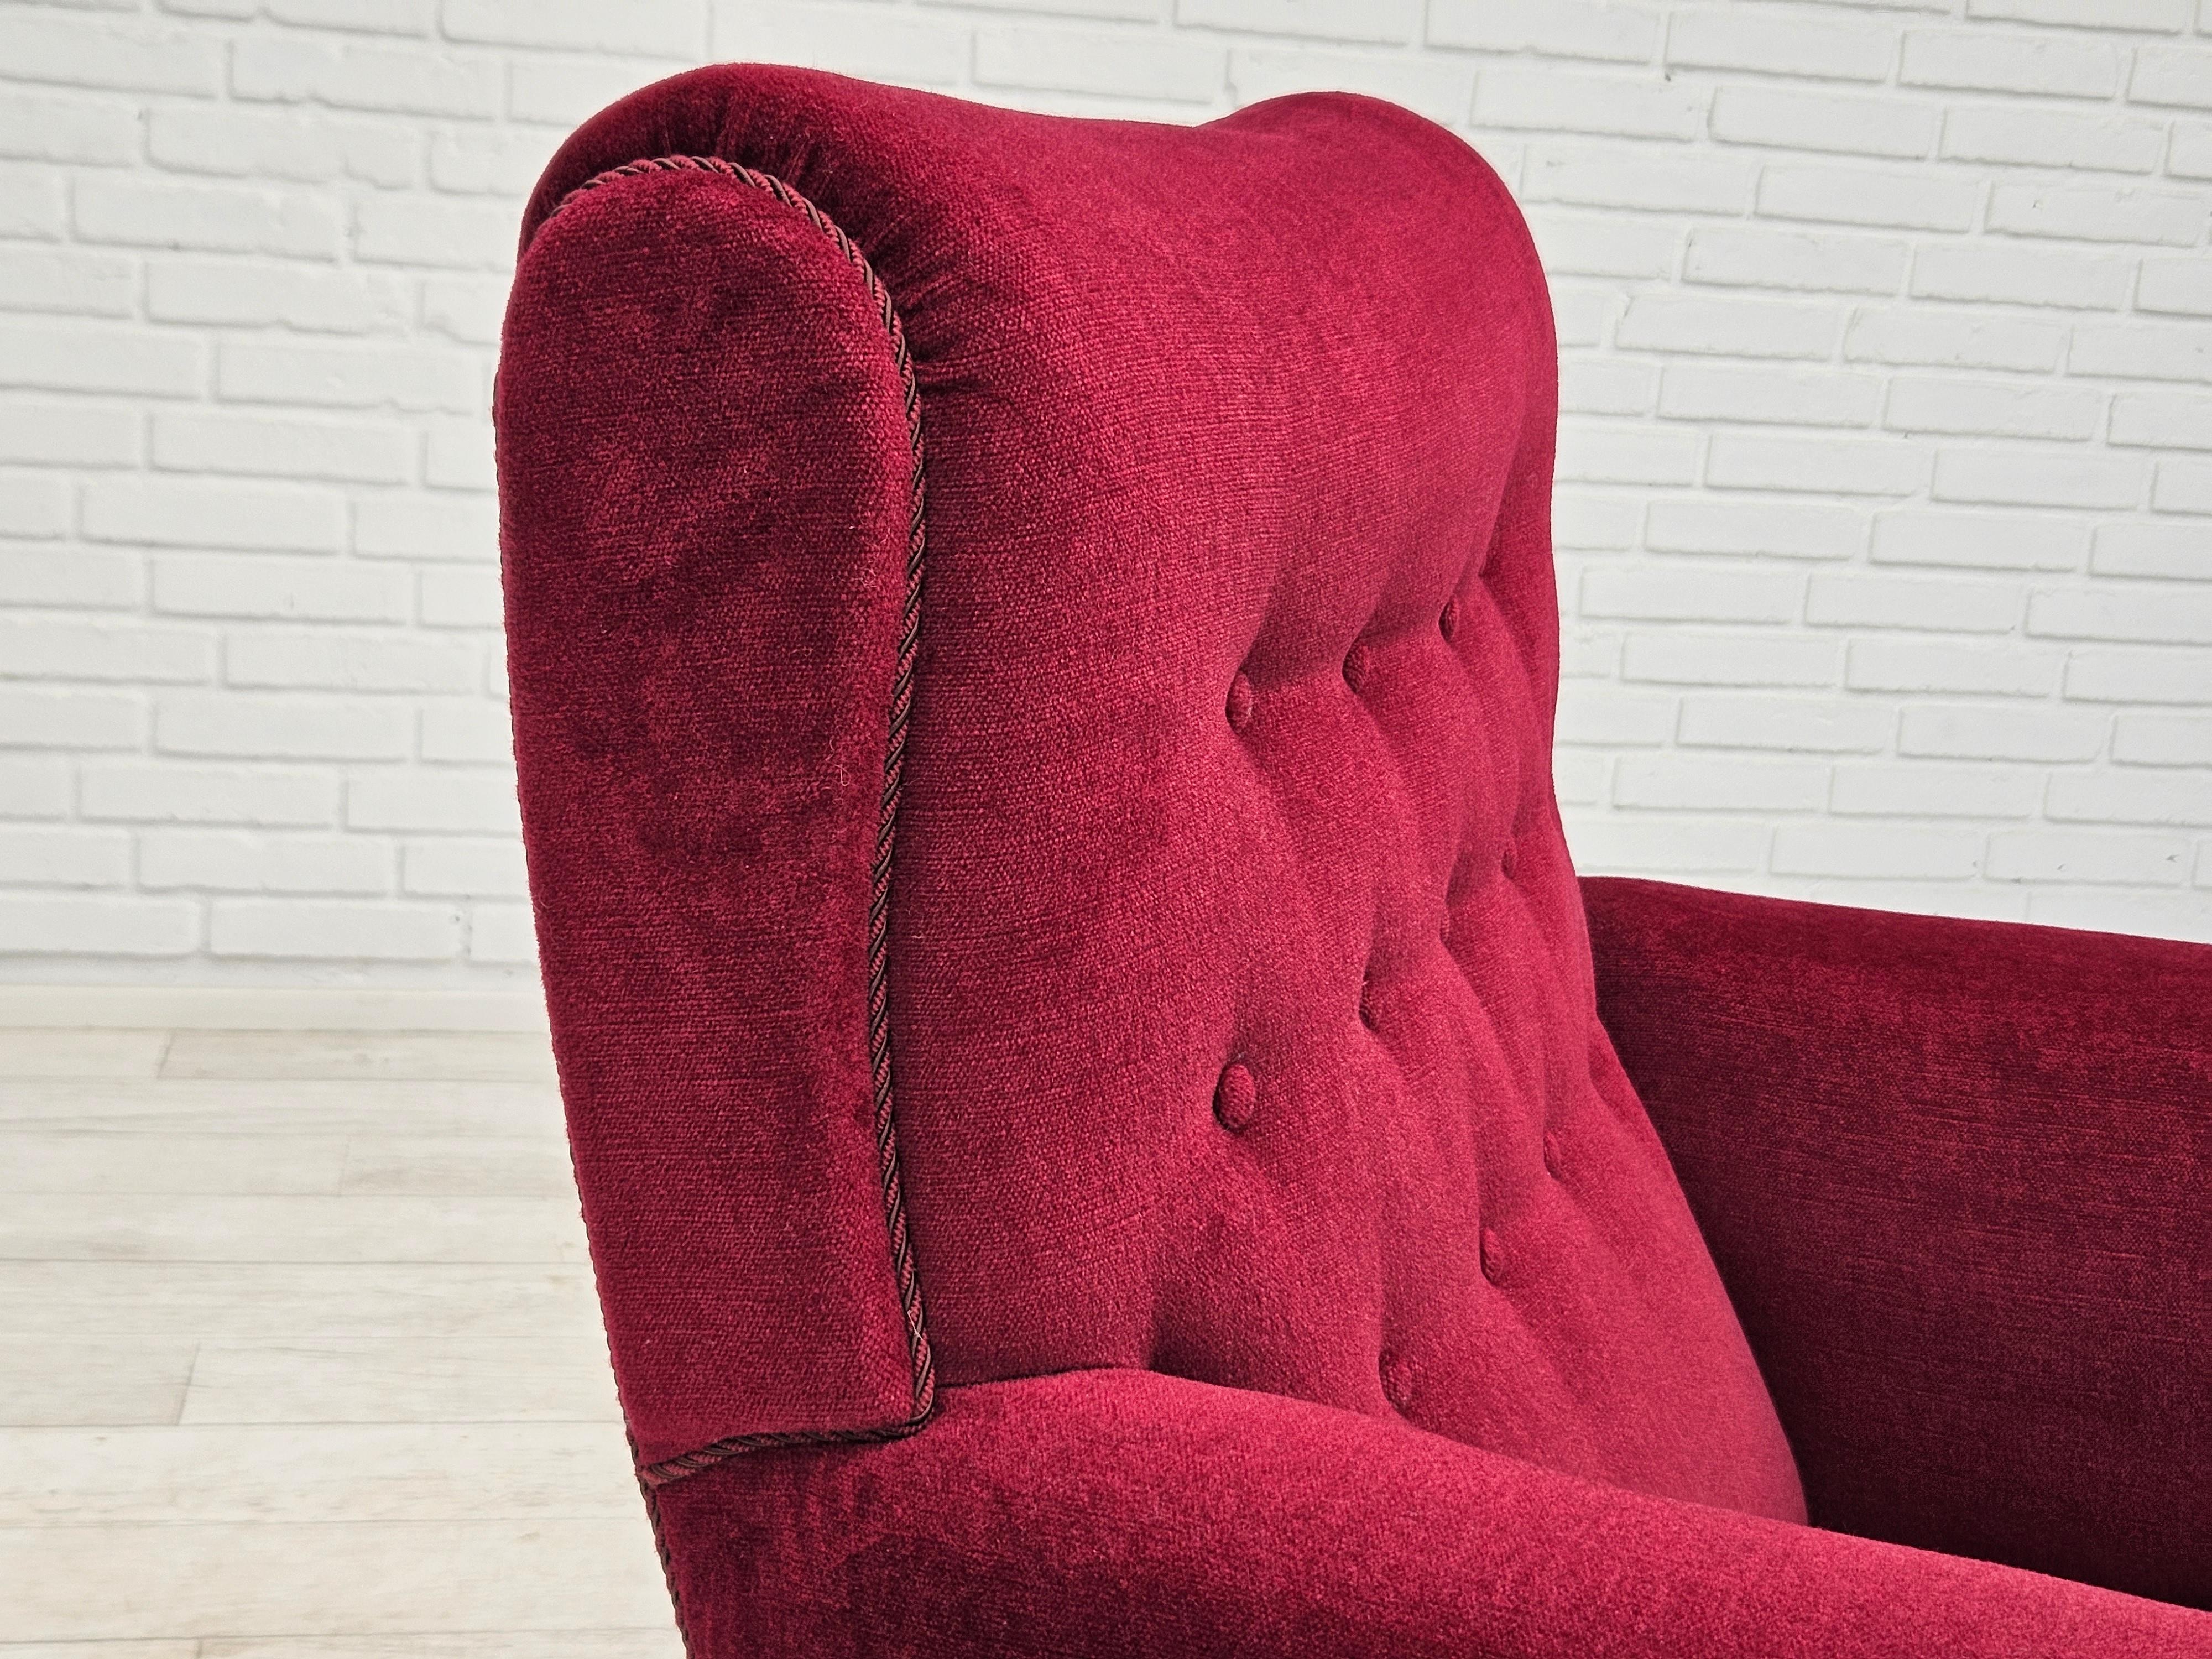 Velvet 1950s, Danish vintage armchair in cherry-red velvet, original condition.